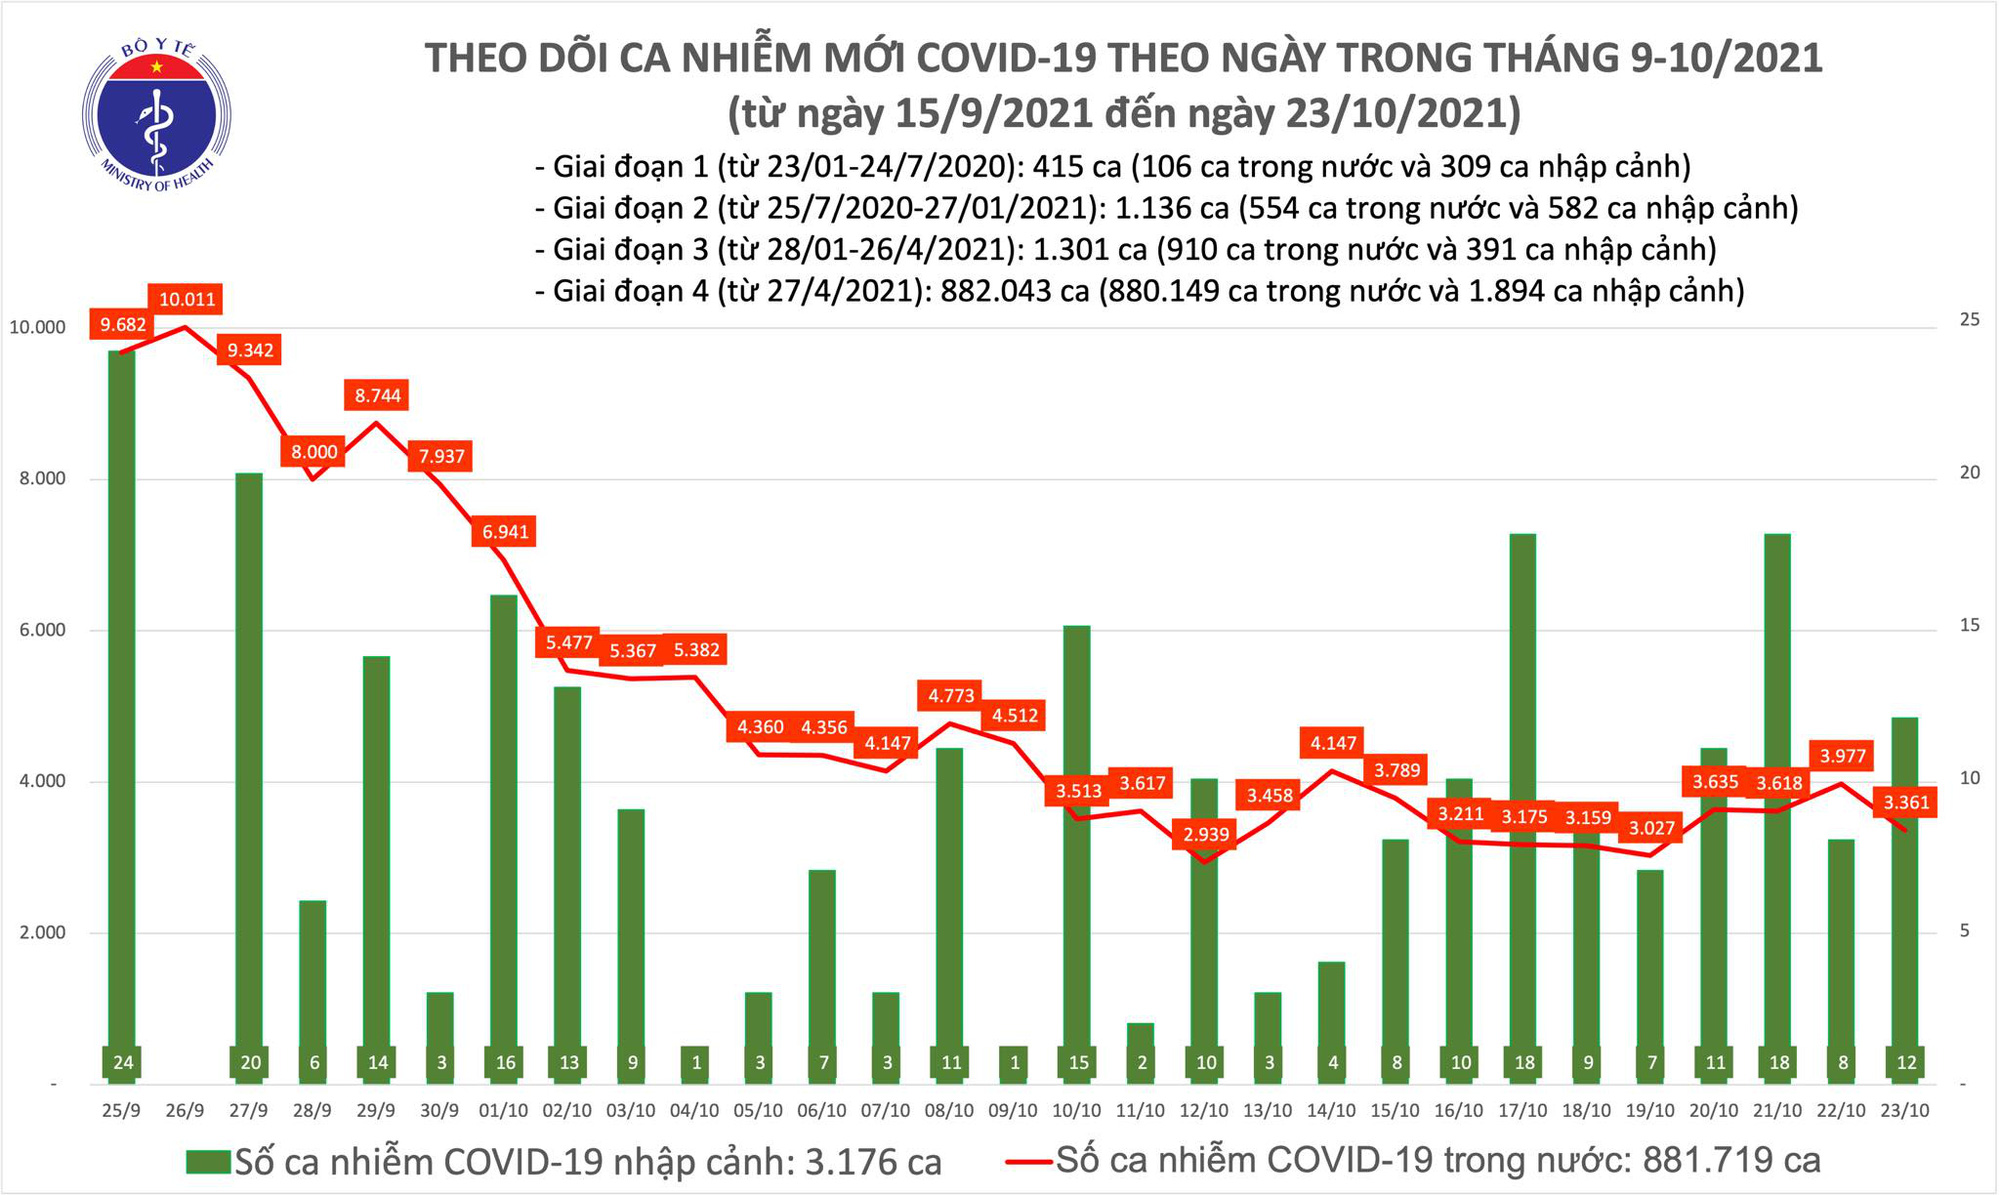 Ngày 23/10: Có 3.373 ca mắc COVID-19 tại 47 tỉnh, thành; giảm 616 ca so với hôm qua - Ảnh 1.